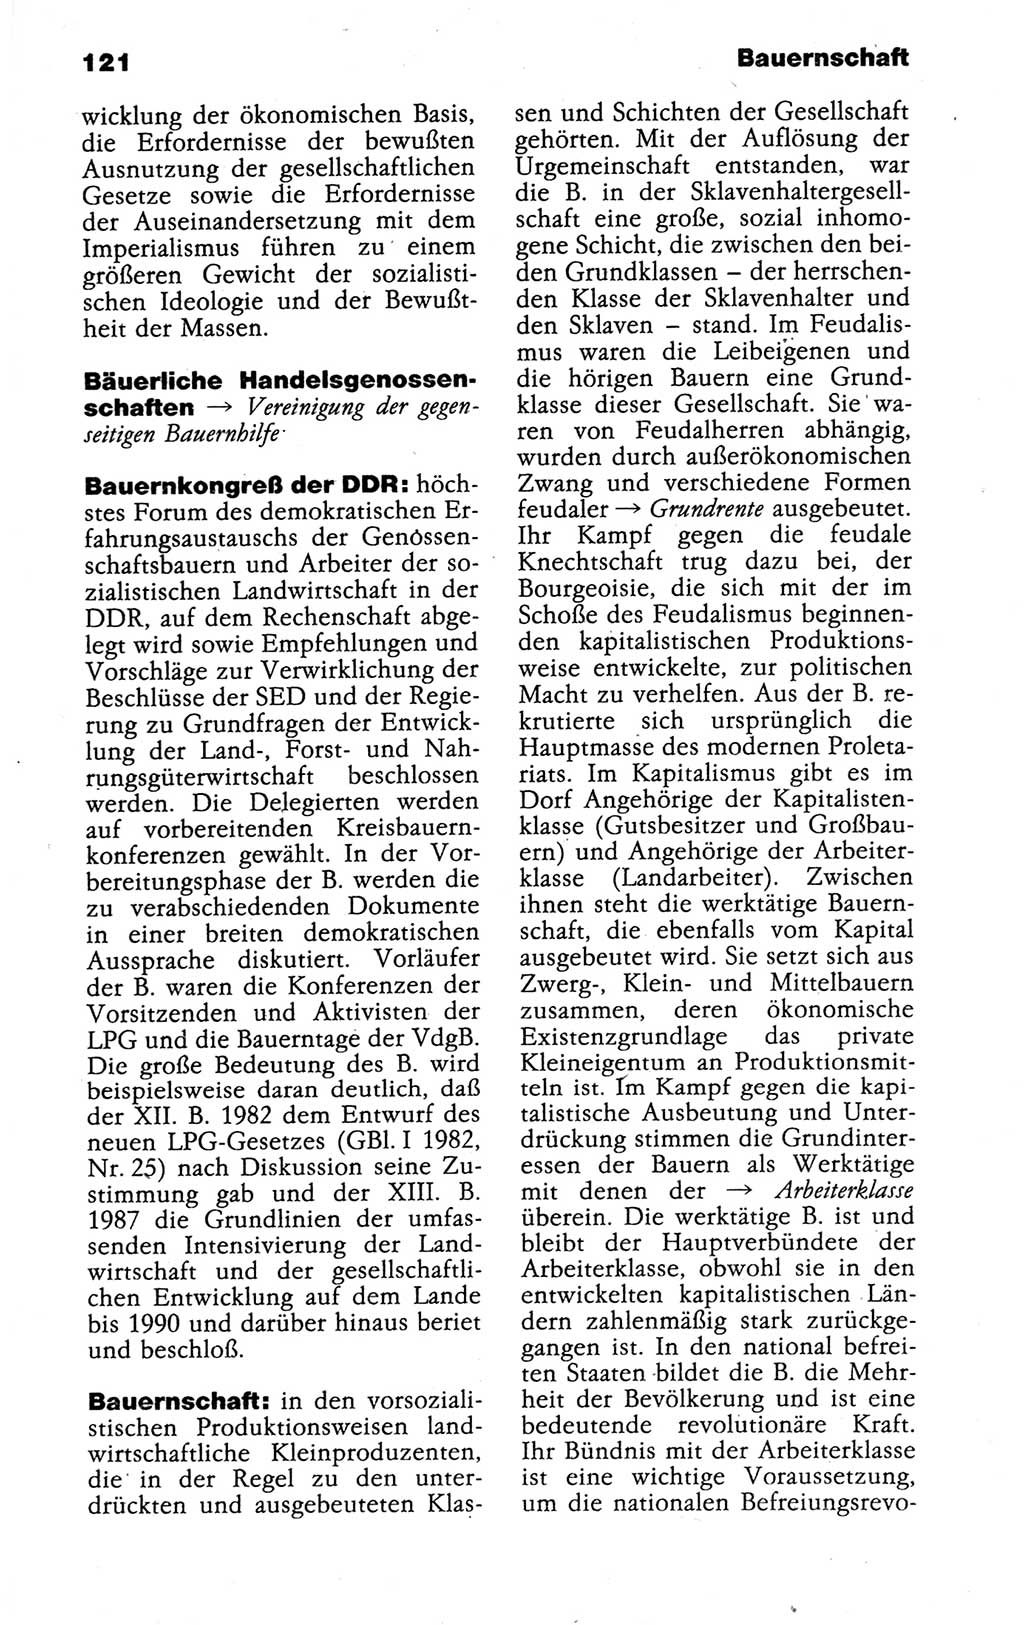 Kleines politisches Wörterbuch [Deutsche Demokratische Republik (DDR)] 1988, Seite 121 (Kl. pol. Wb. DDR 1988, S. 121)